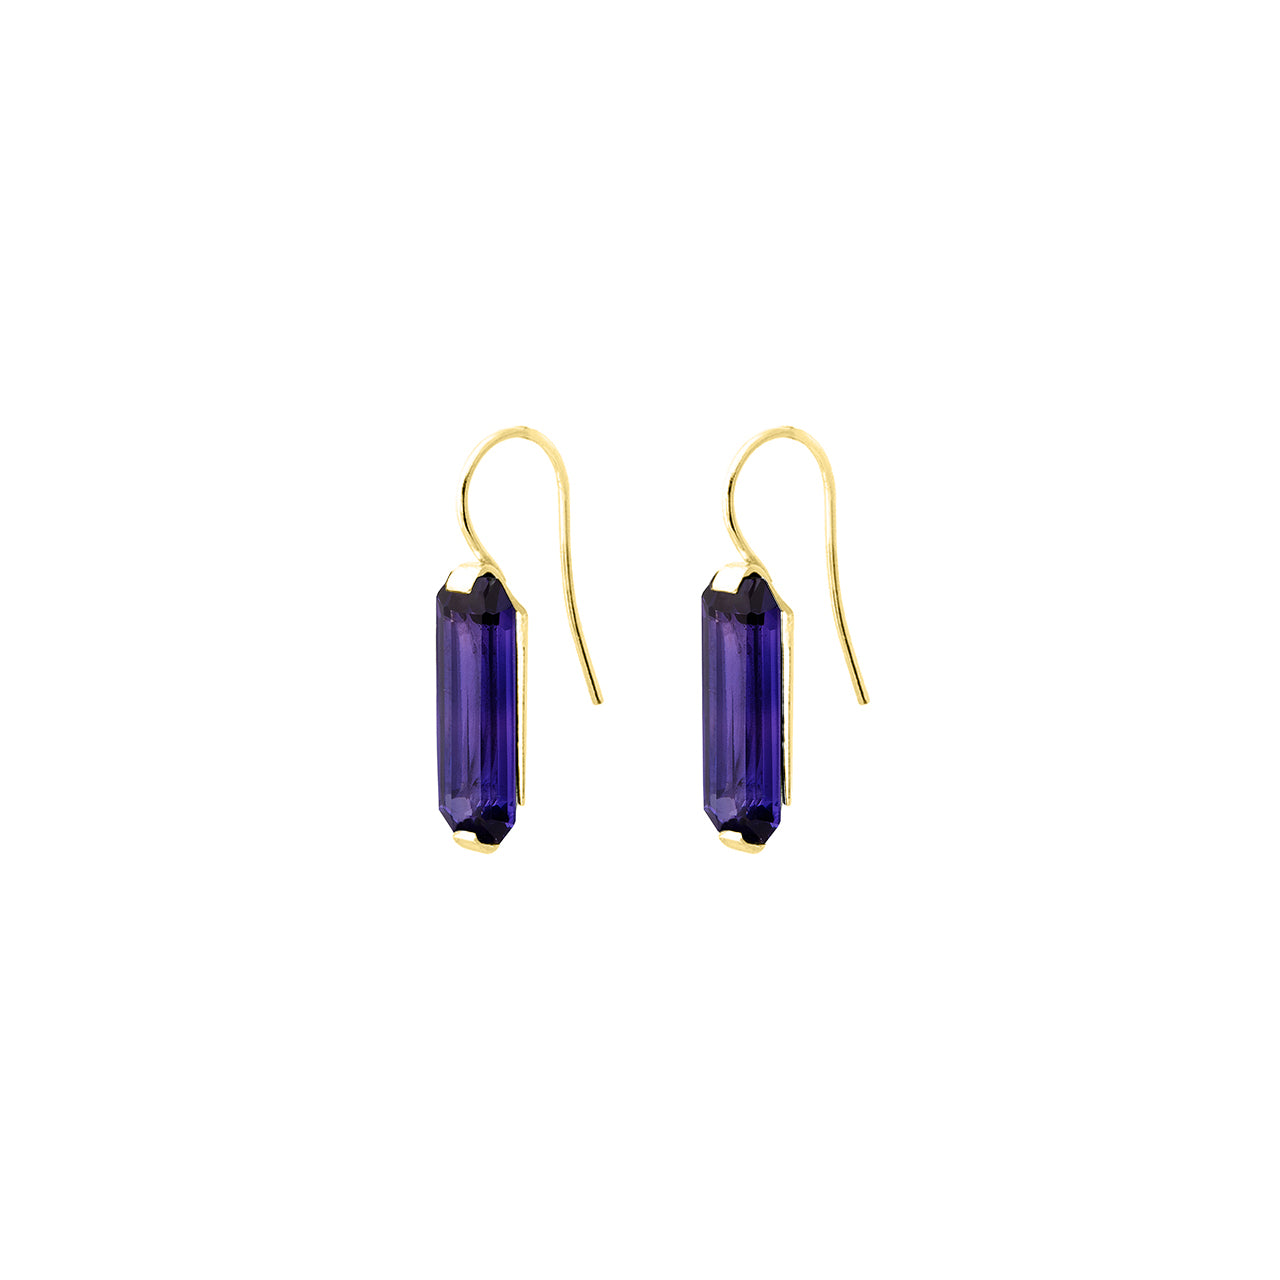 Apex hook earrings with vintage purple stones